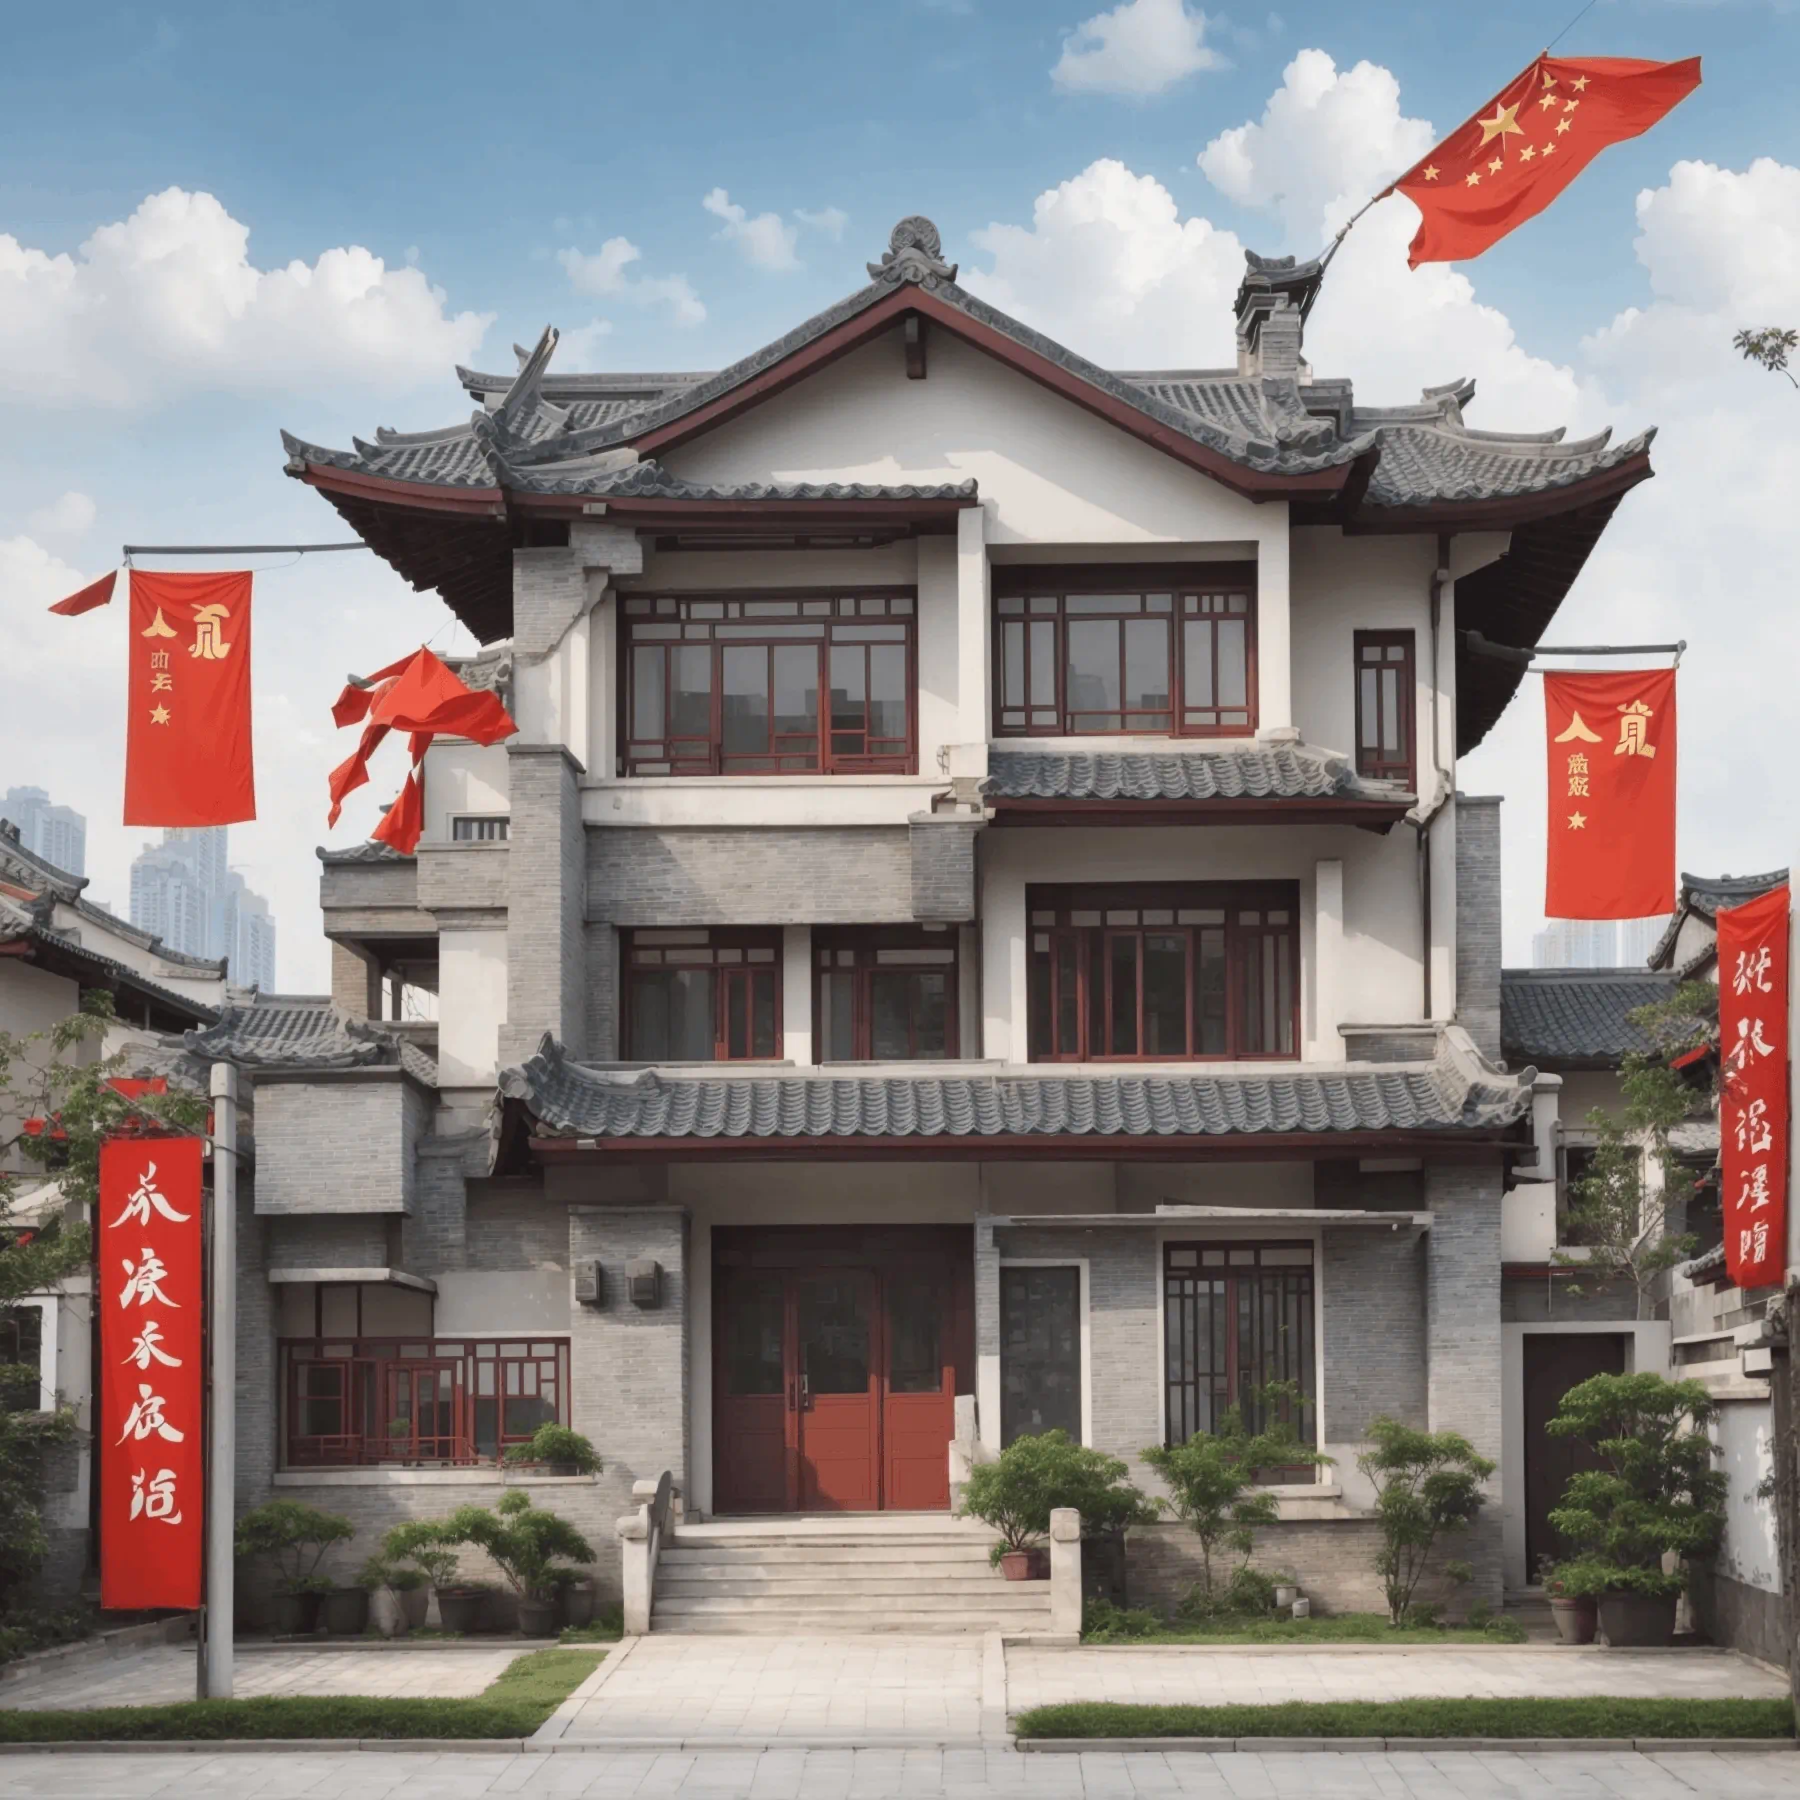 خرید خانه در چین با وام بانکی